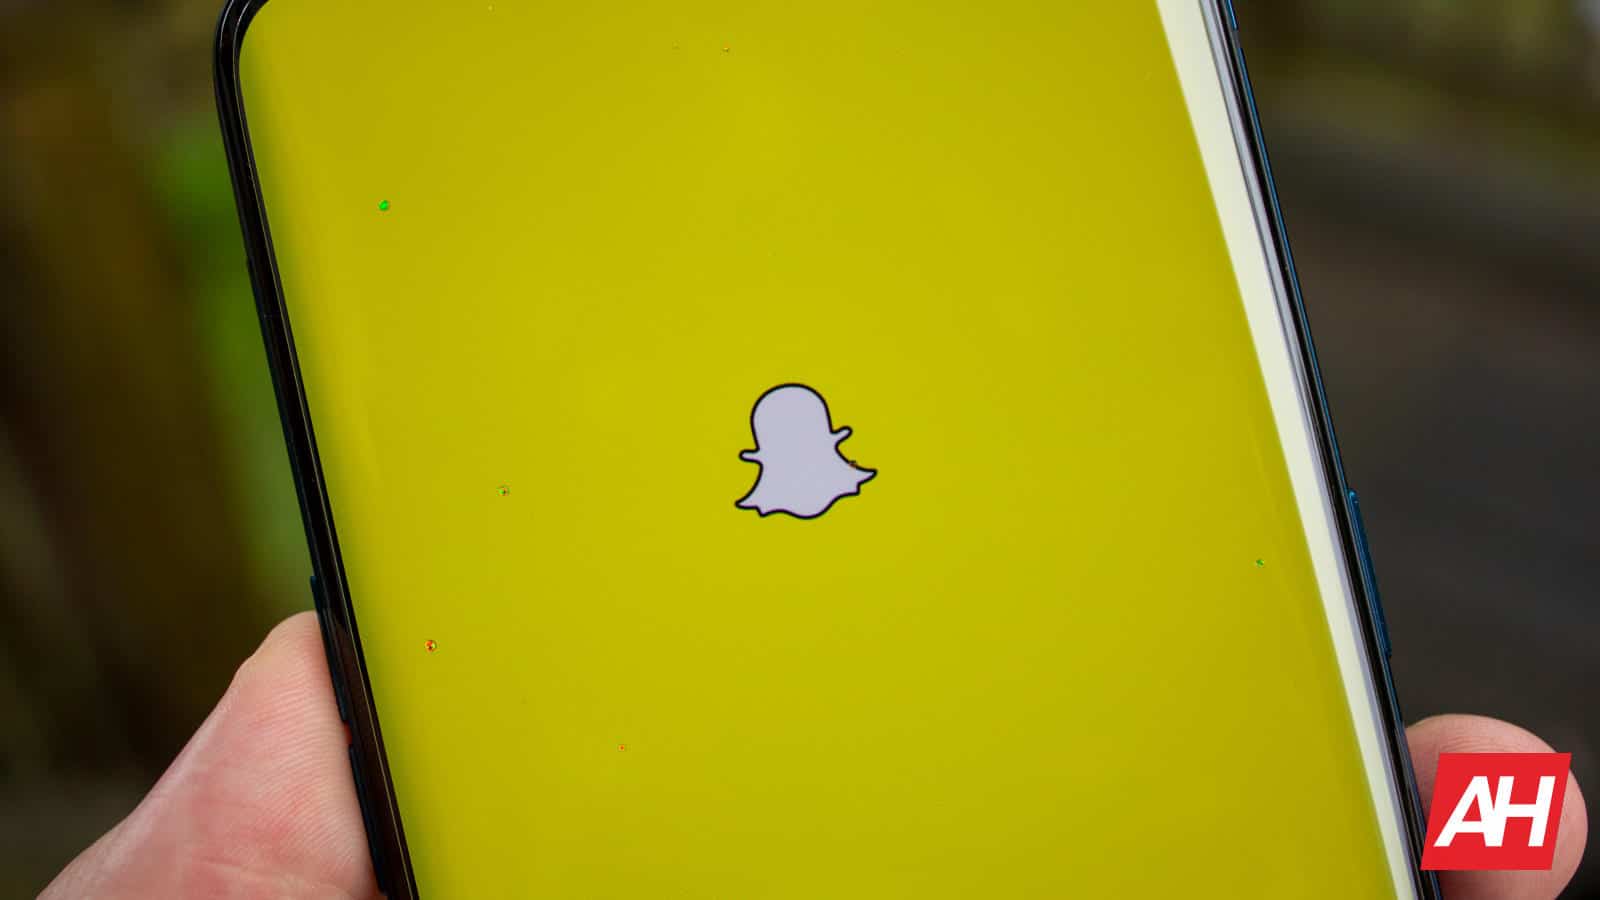 Новая функция камеры Snapchat расширяет возможности покупок в приложении